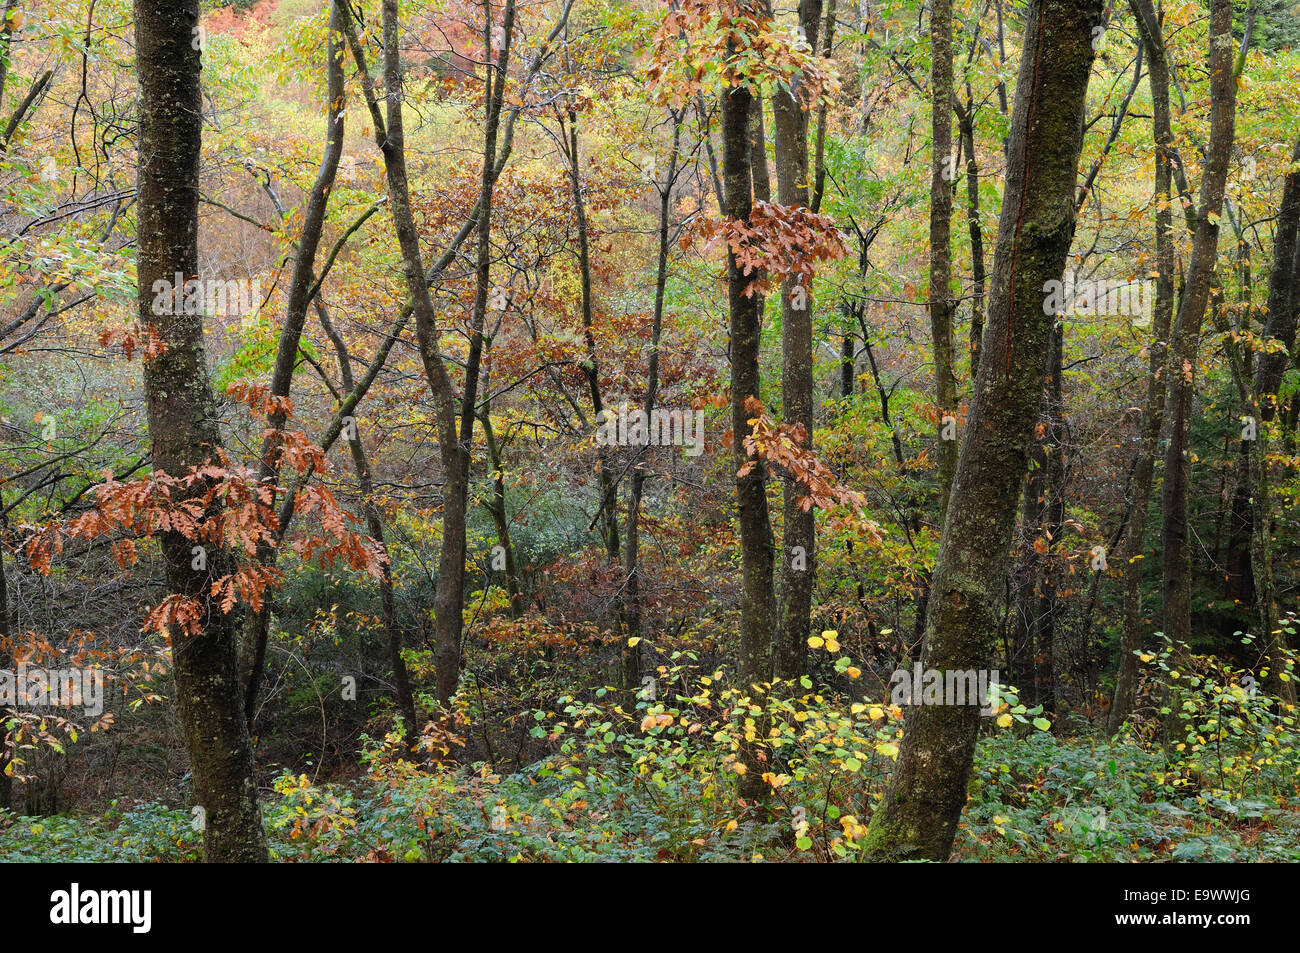 Gemischte Laubgehölze-Bäume in einem Wald im Herbst Brechfa Wald Carmarthenshire Wales Cymru UK GB Stockfoto